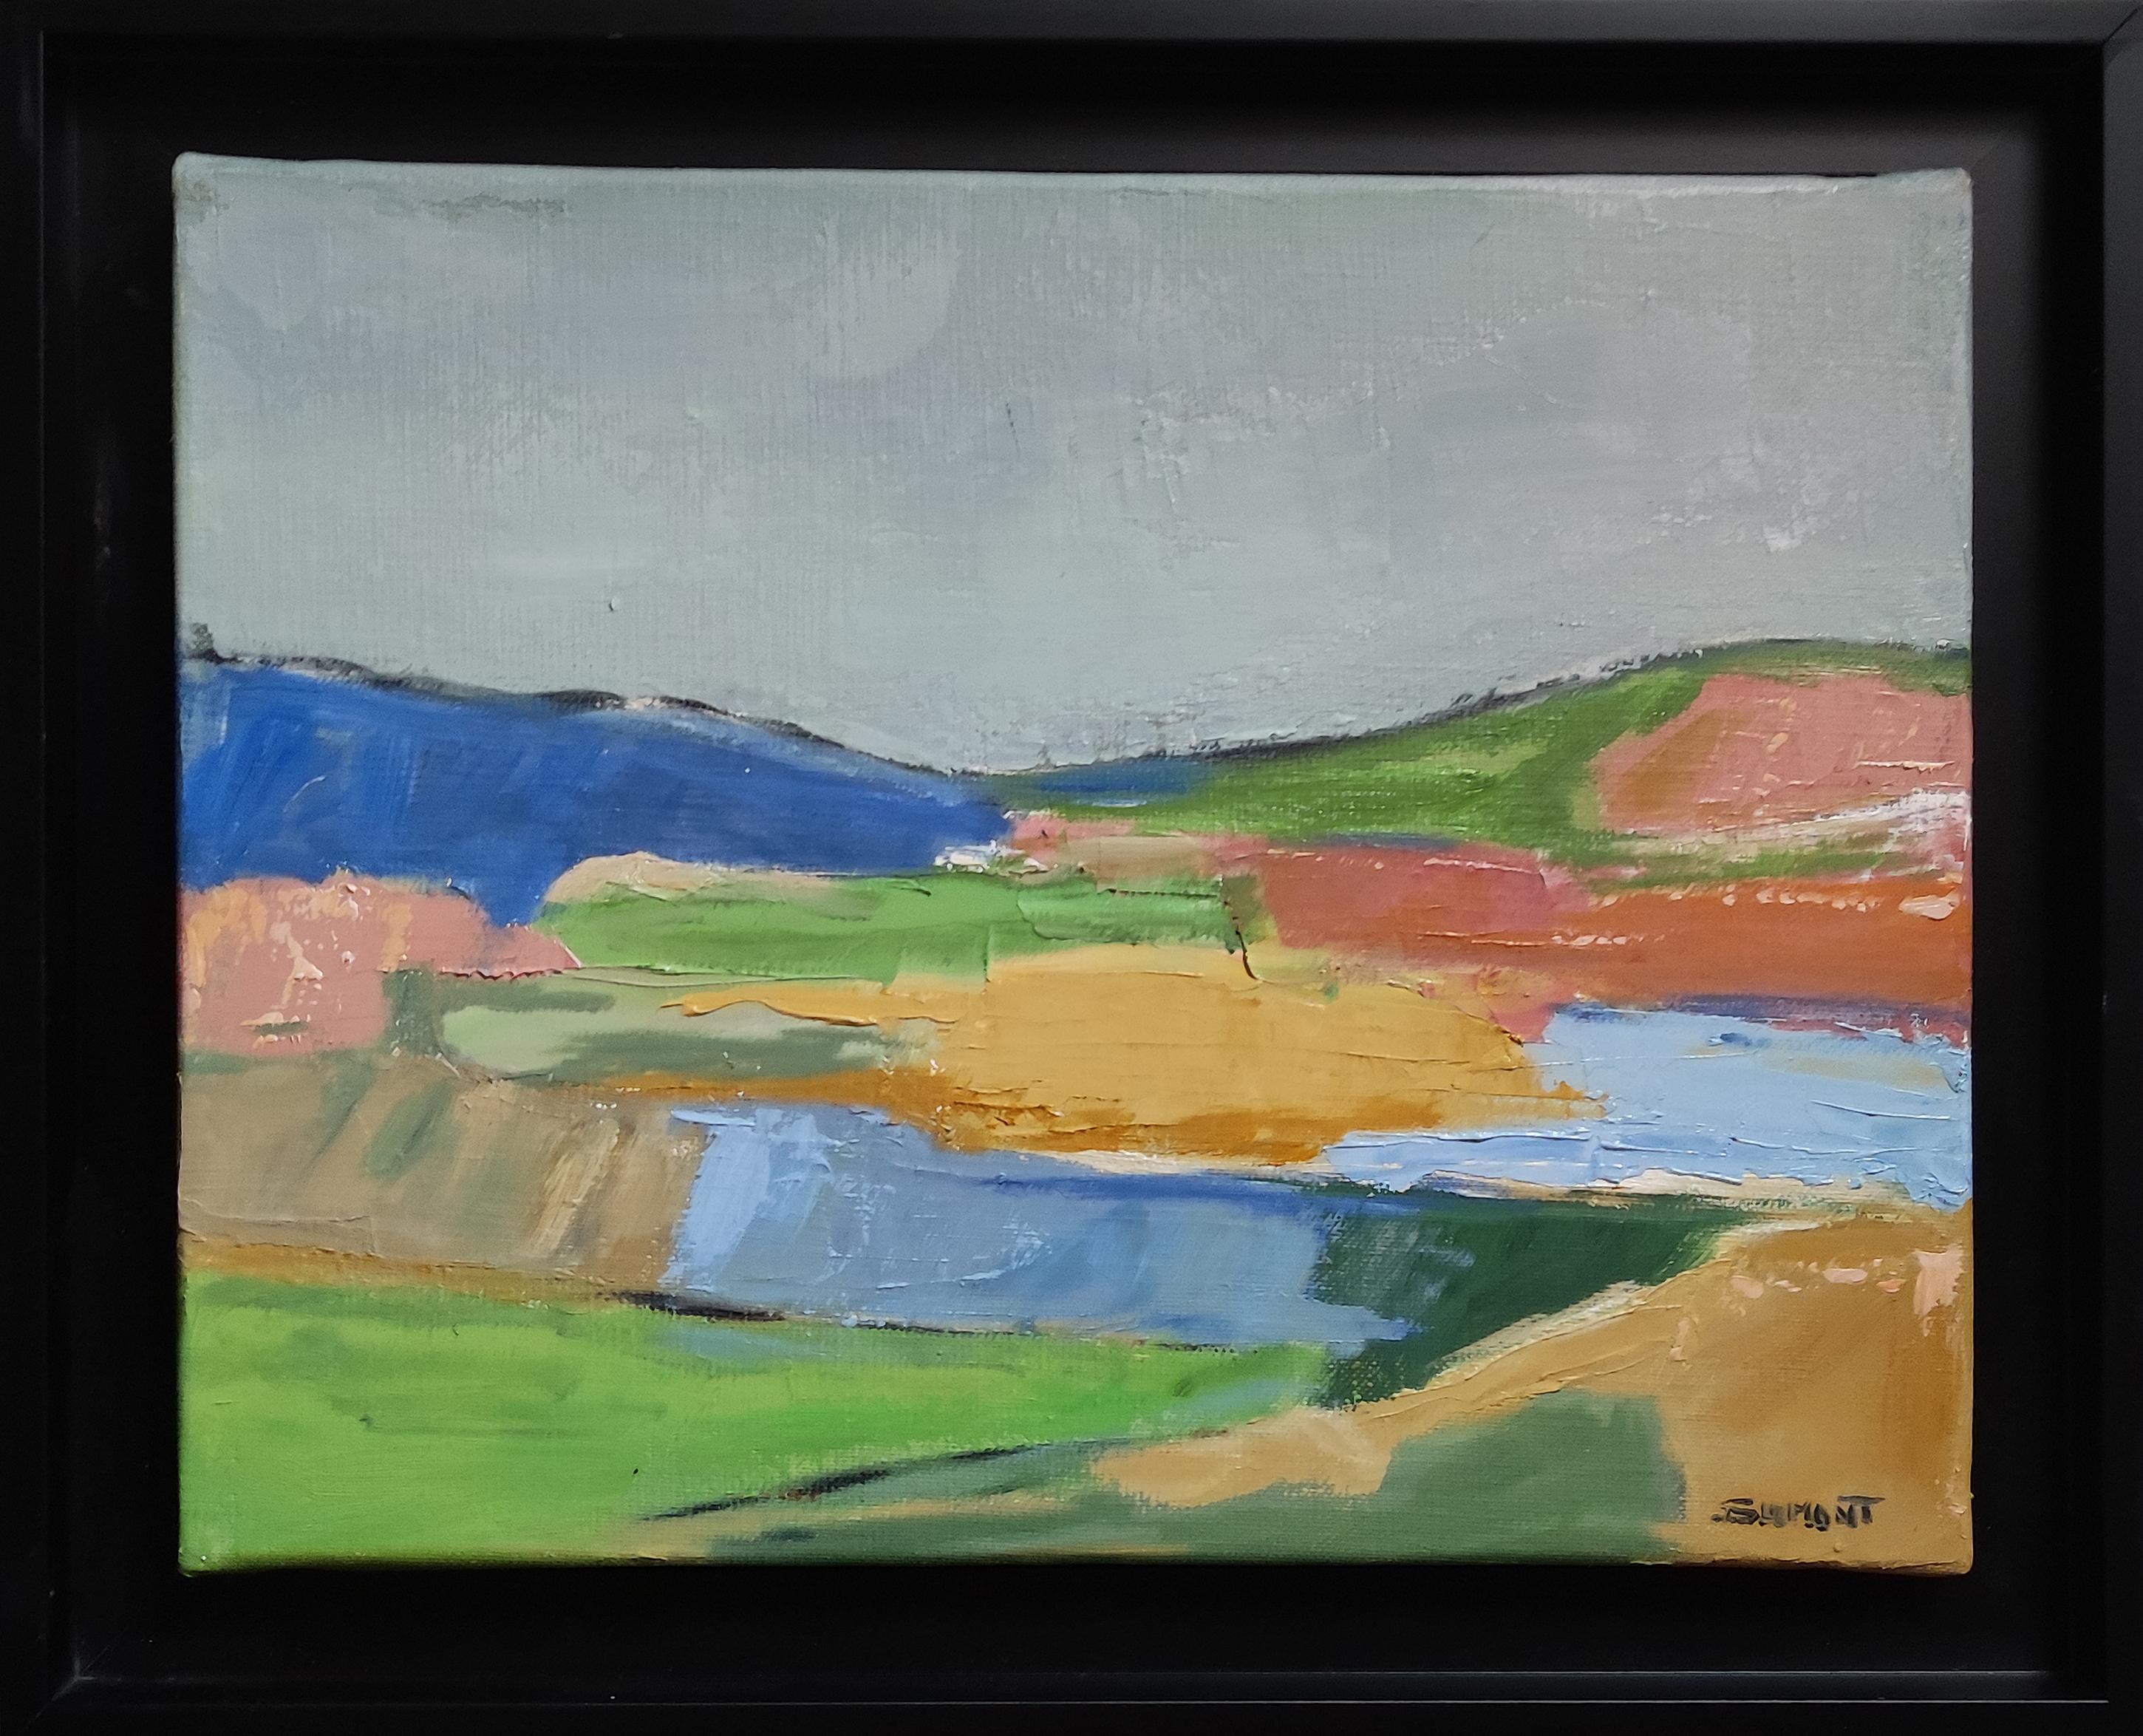 SOPHIE DUMONT Landscape Painting – Couleurs éphemeres, Landschaft, Öl auf Leinwand, Expressionismus, Multicolor, französisch